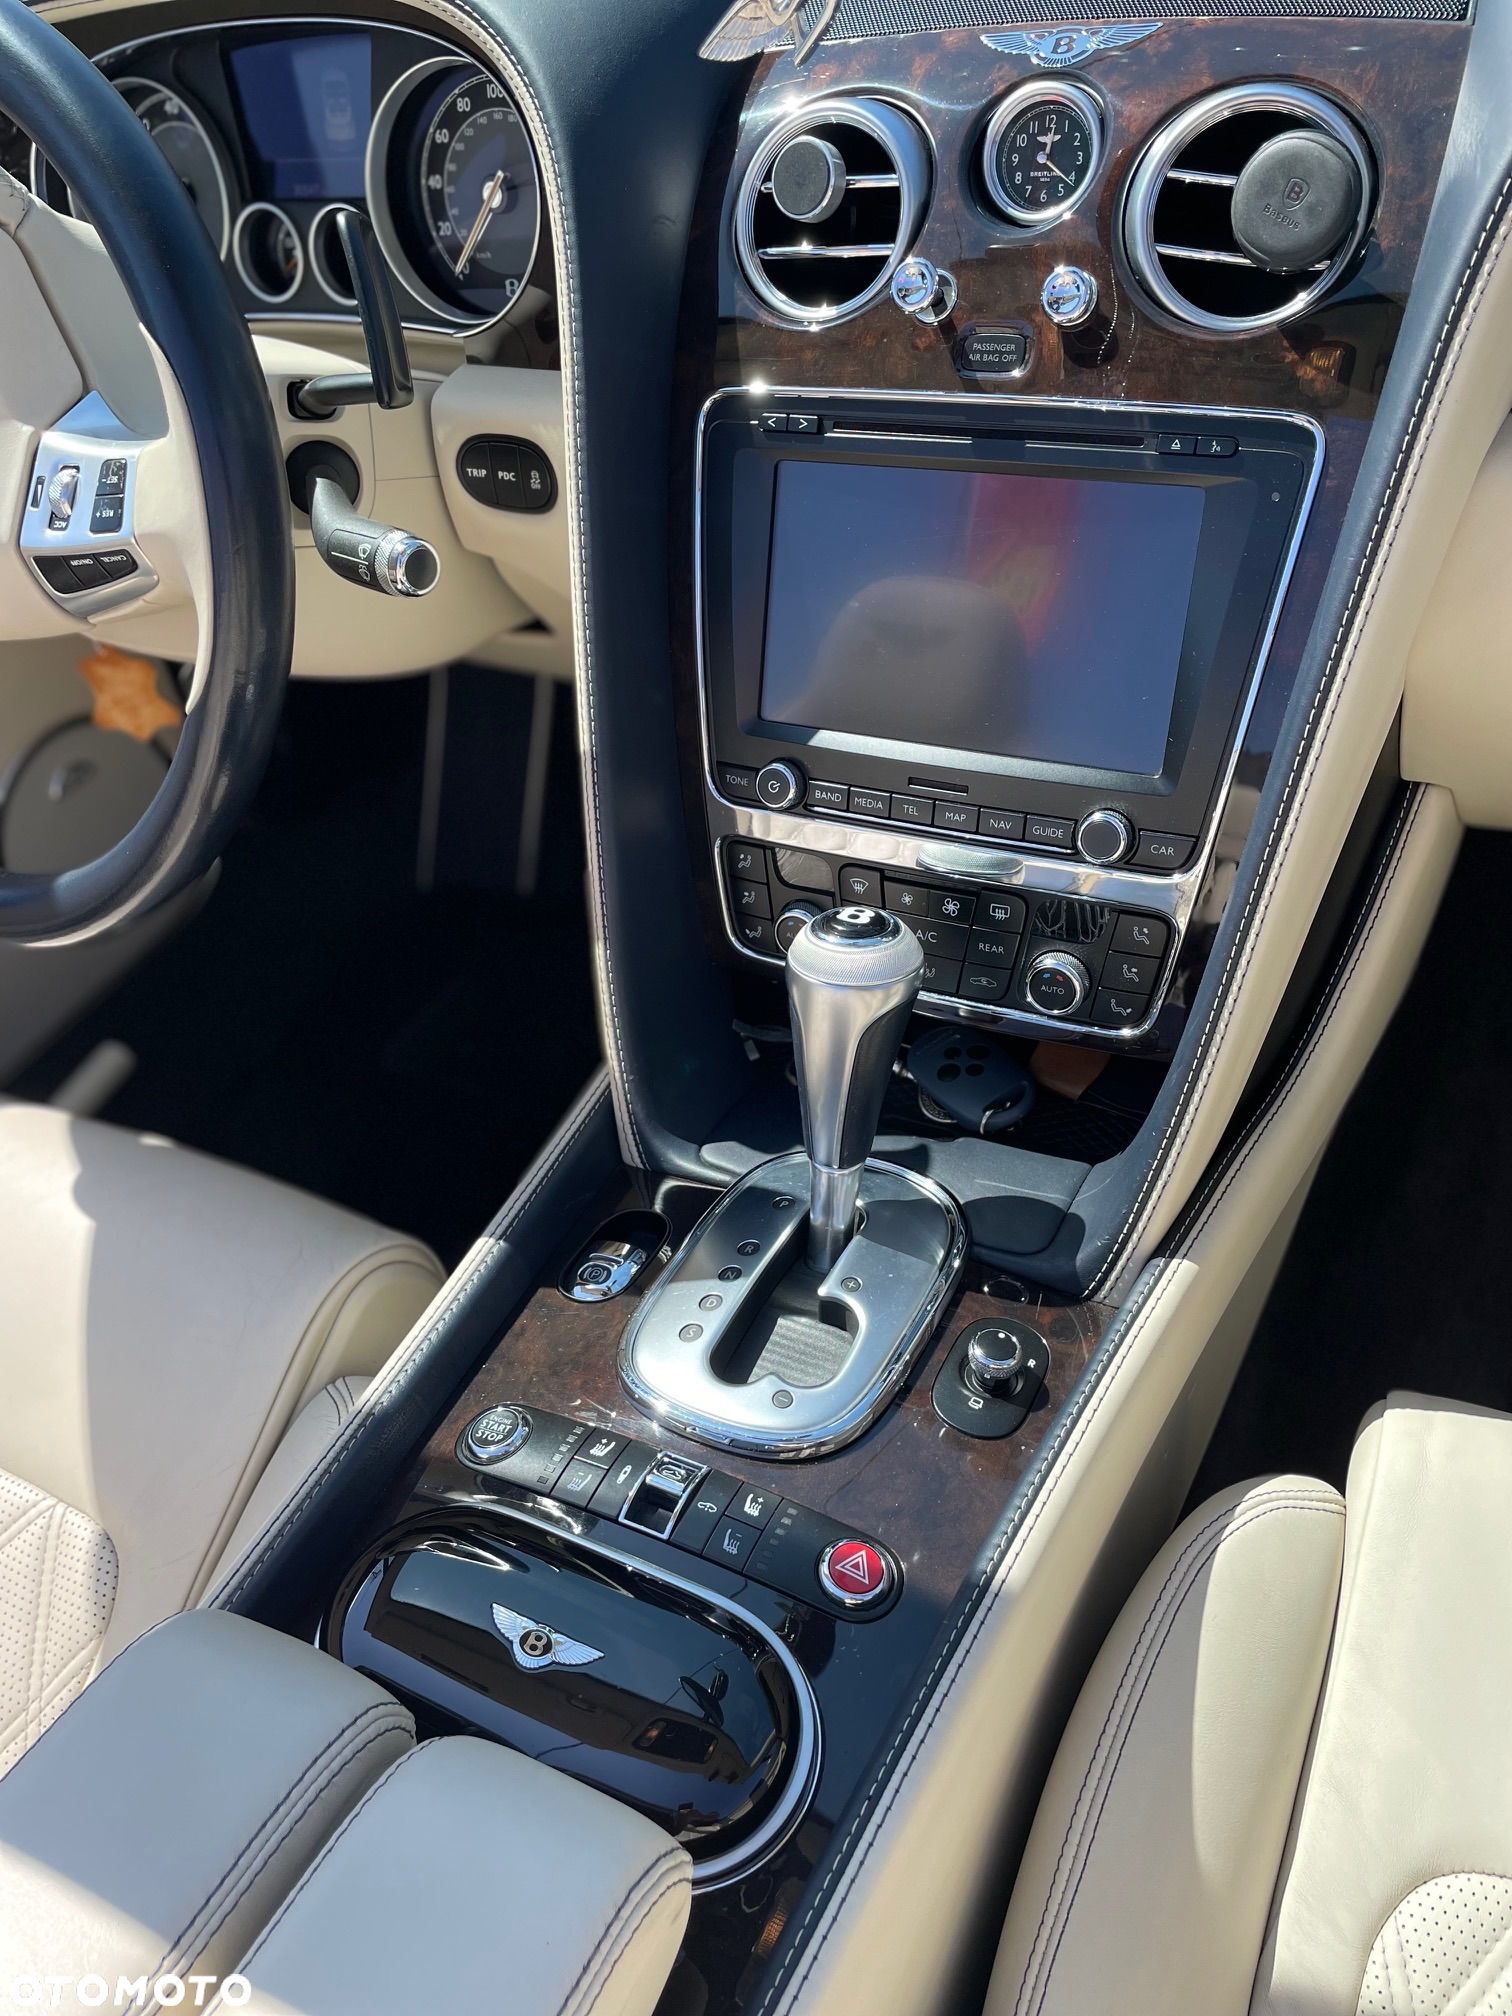 Bentley Continental GT Speed - 25